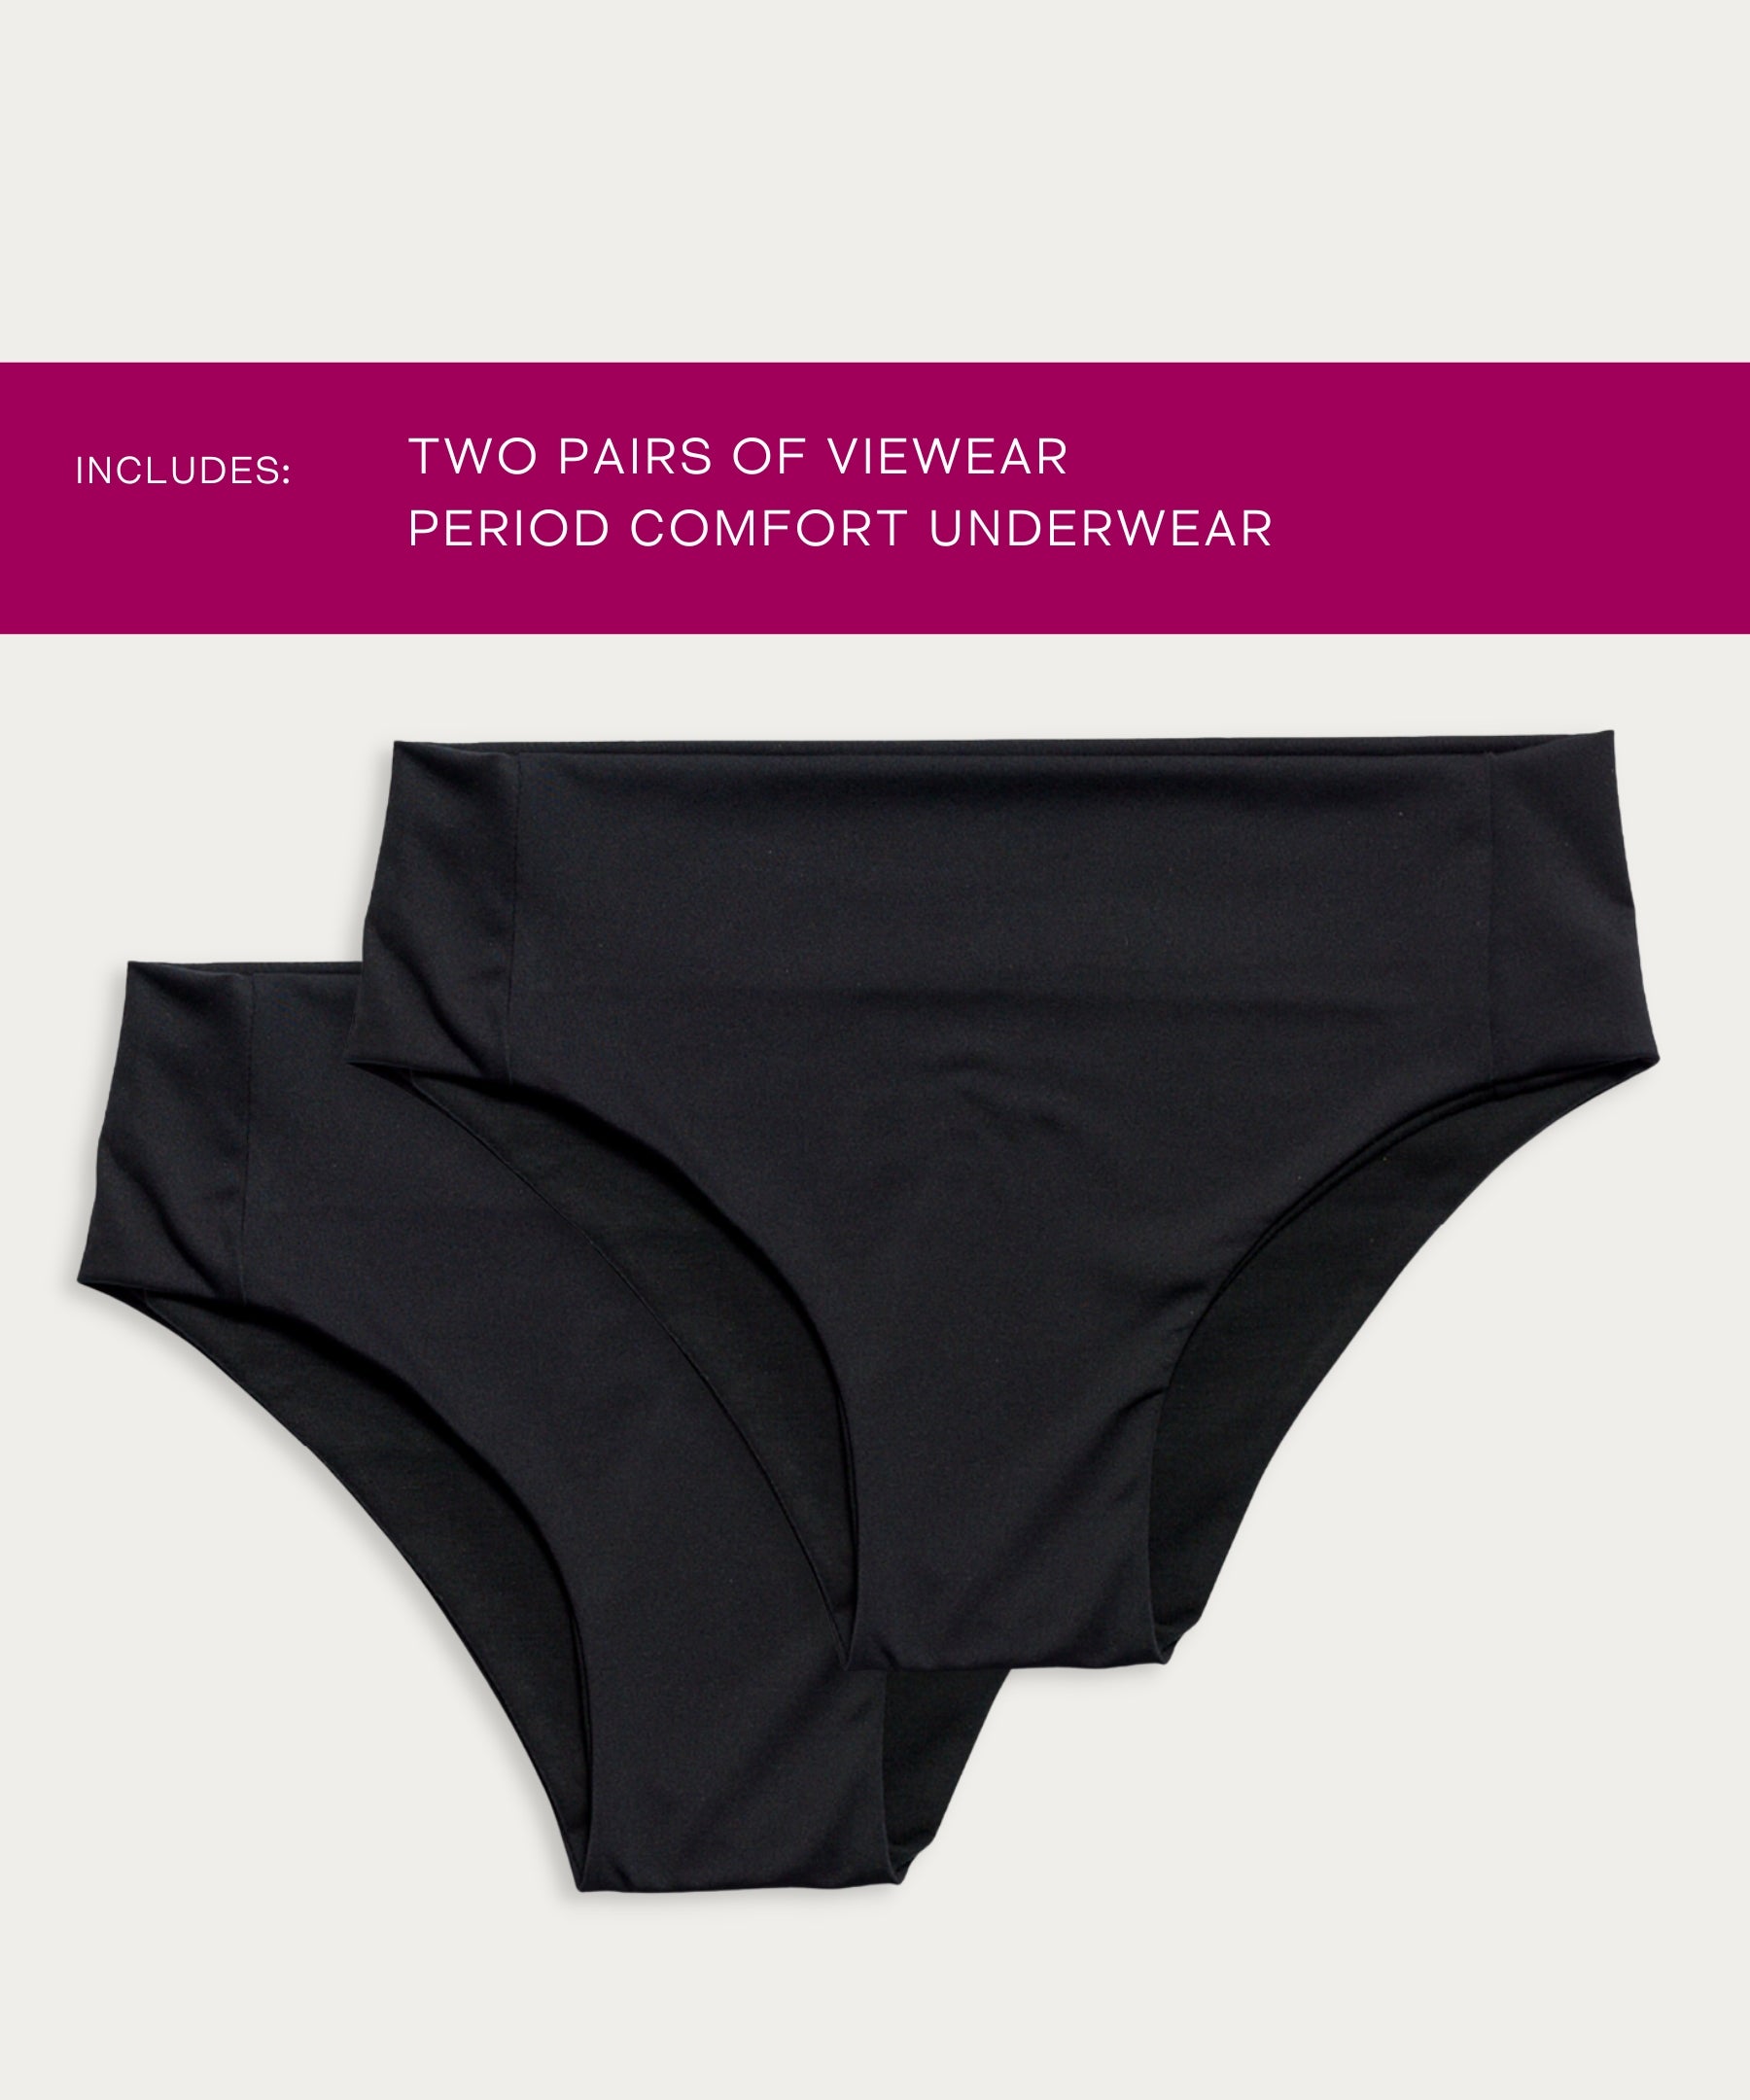 FourthWear Postpartum Underwear + Between Legs Ice/Heat Bundle